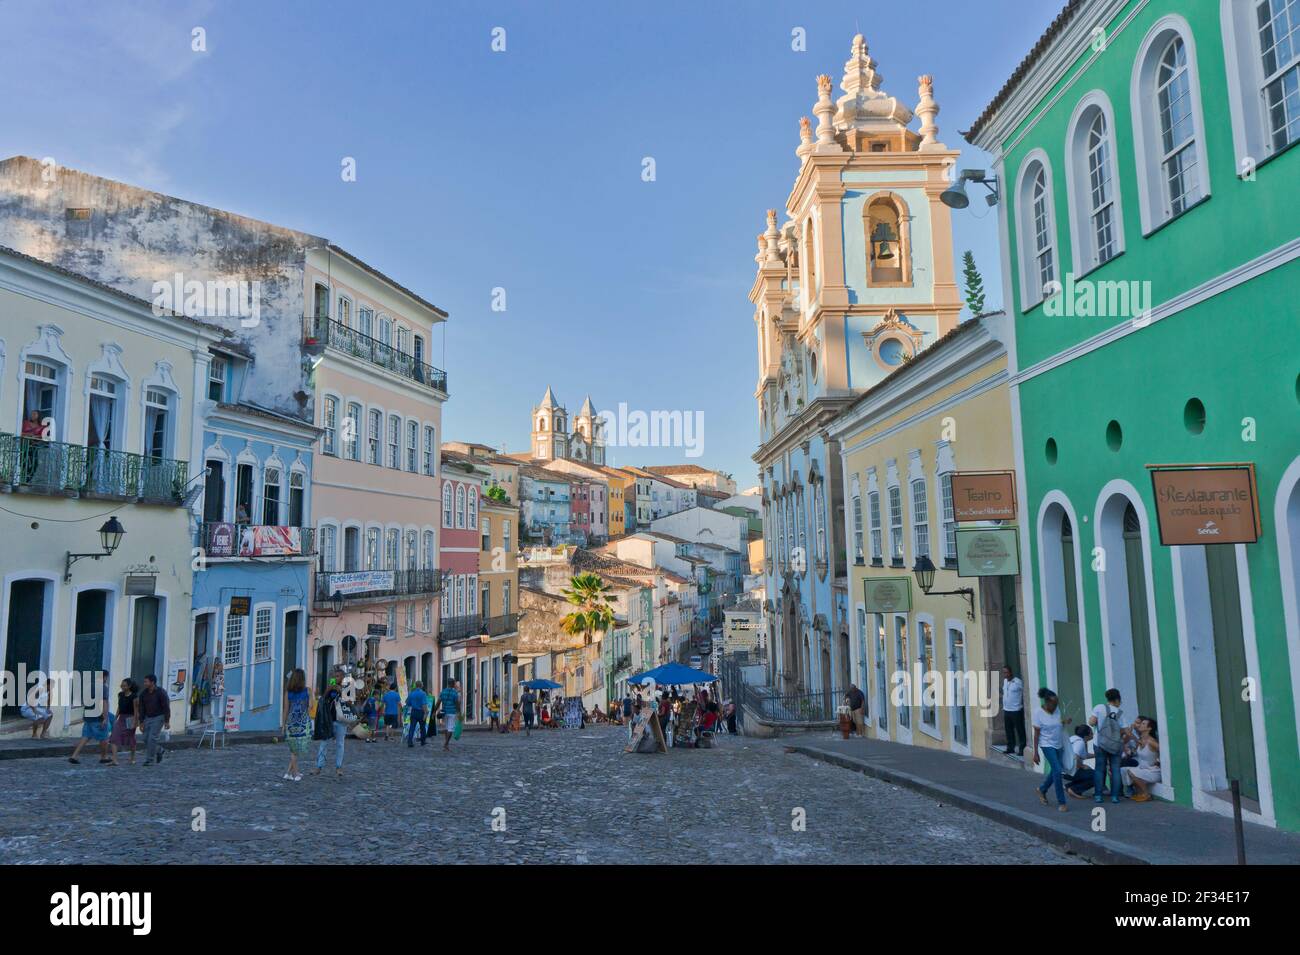 Salvador de Bahia, Pelourinho view with colorful buildings, Brazil, South America Stock Photo